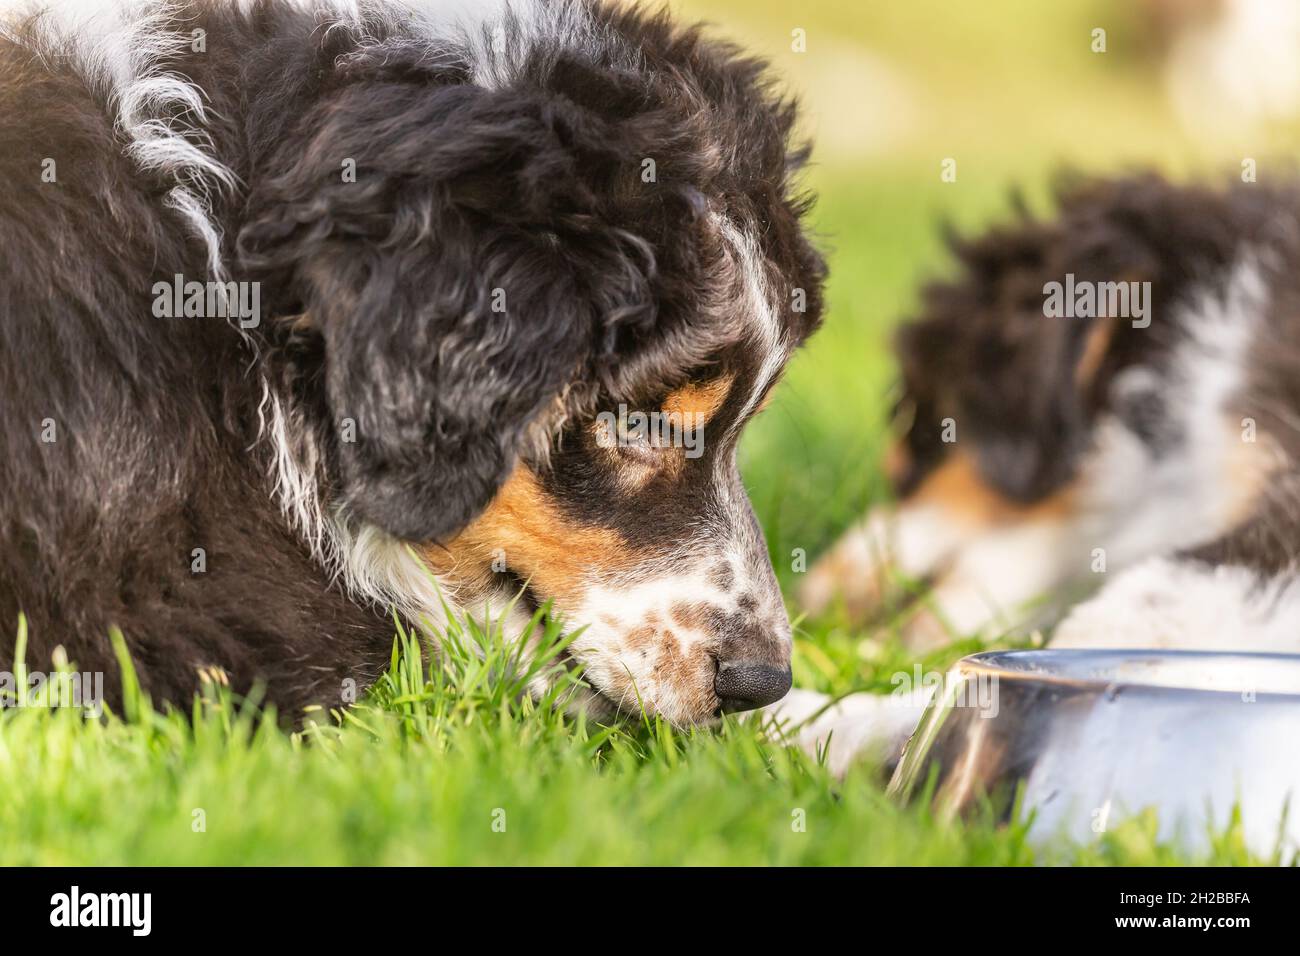 Portrait d'un chien de berger australien tricolore qui boit dans un bol d'eau Banque D'Images